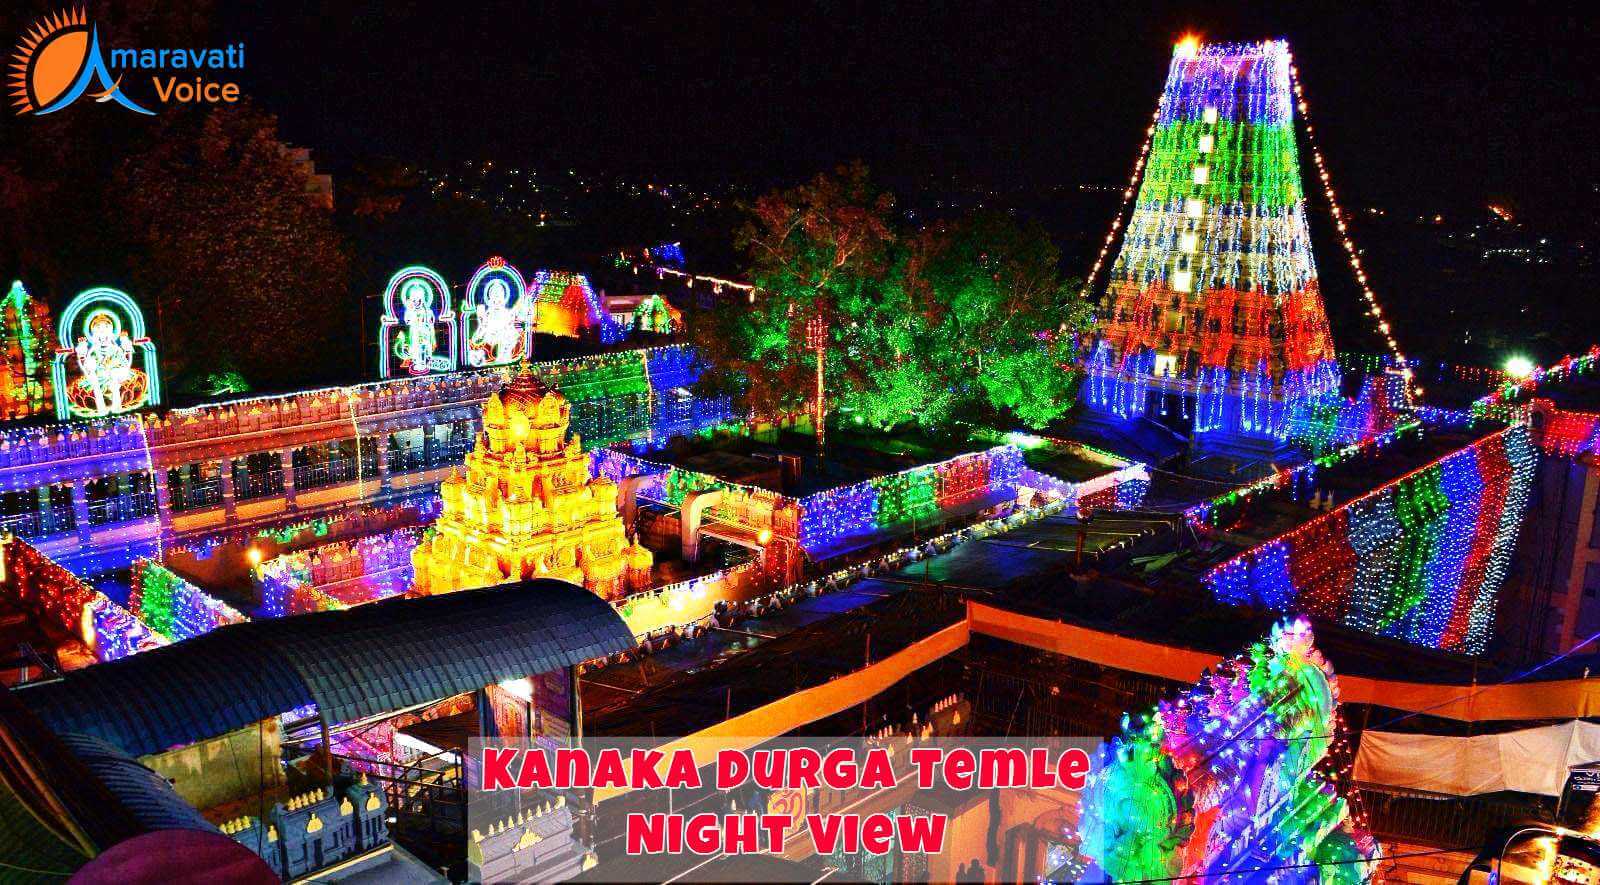 Kanaka Durga Temple Illuminated on Dasara Night